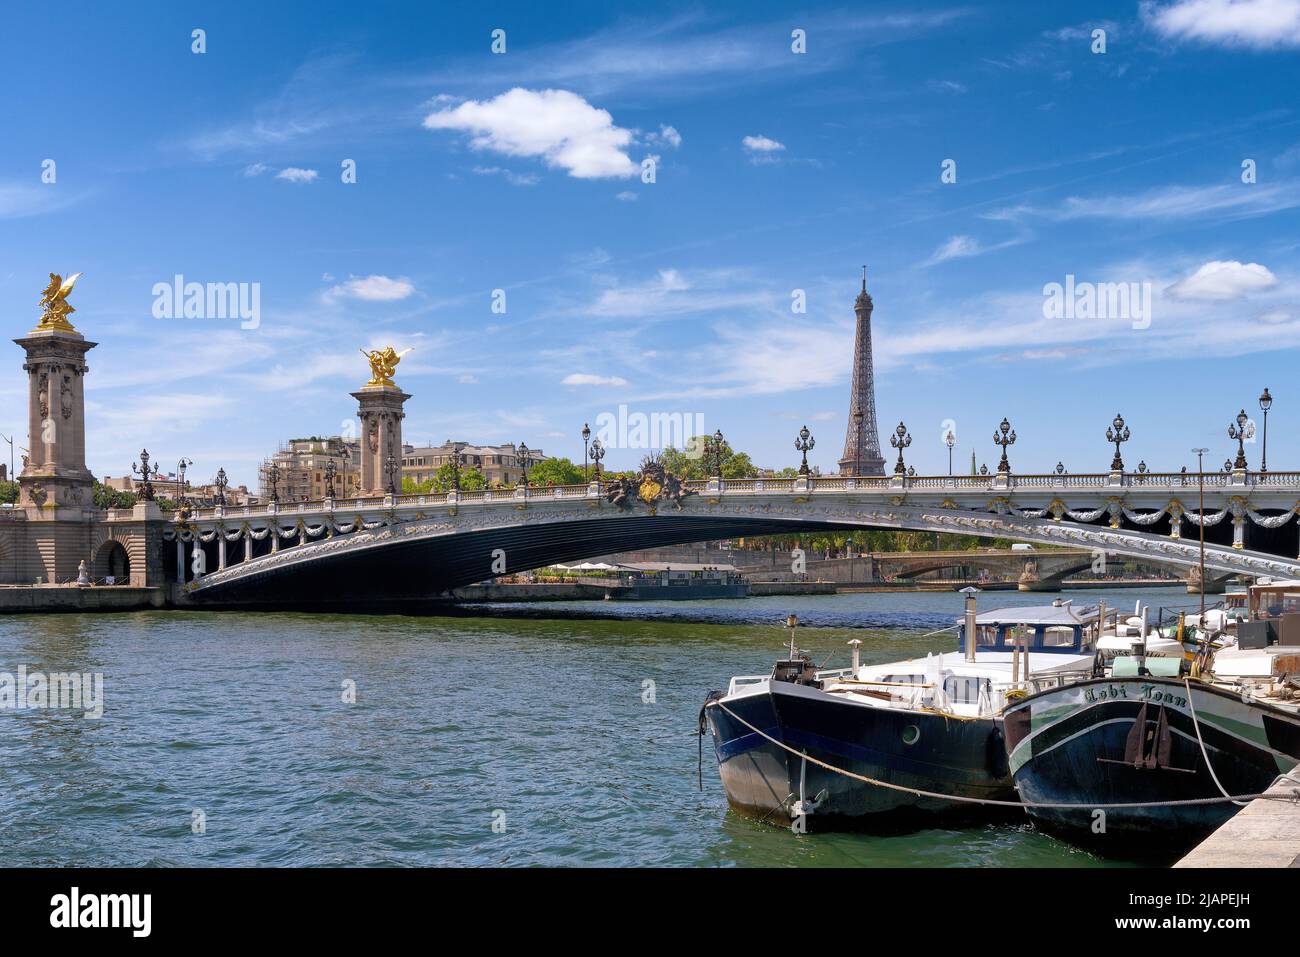 Il Pont Alexandre III è un ponte ad arco che attraversa la Senna a Parigi. Collega il quartiere degli Champs-ƒlysŽes con quelli degli Invalides e della Torre Eiffel. Il ponte è ampiamente considerato come il più ornato, stravagante ponte della città. E 'stato classificato come monumento francese historique dal 1975. Parigi, Francia Foto Stock